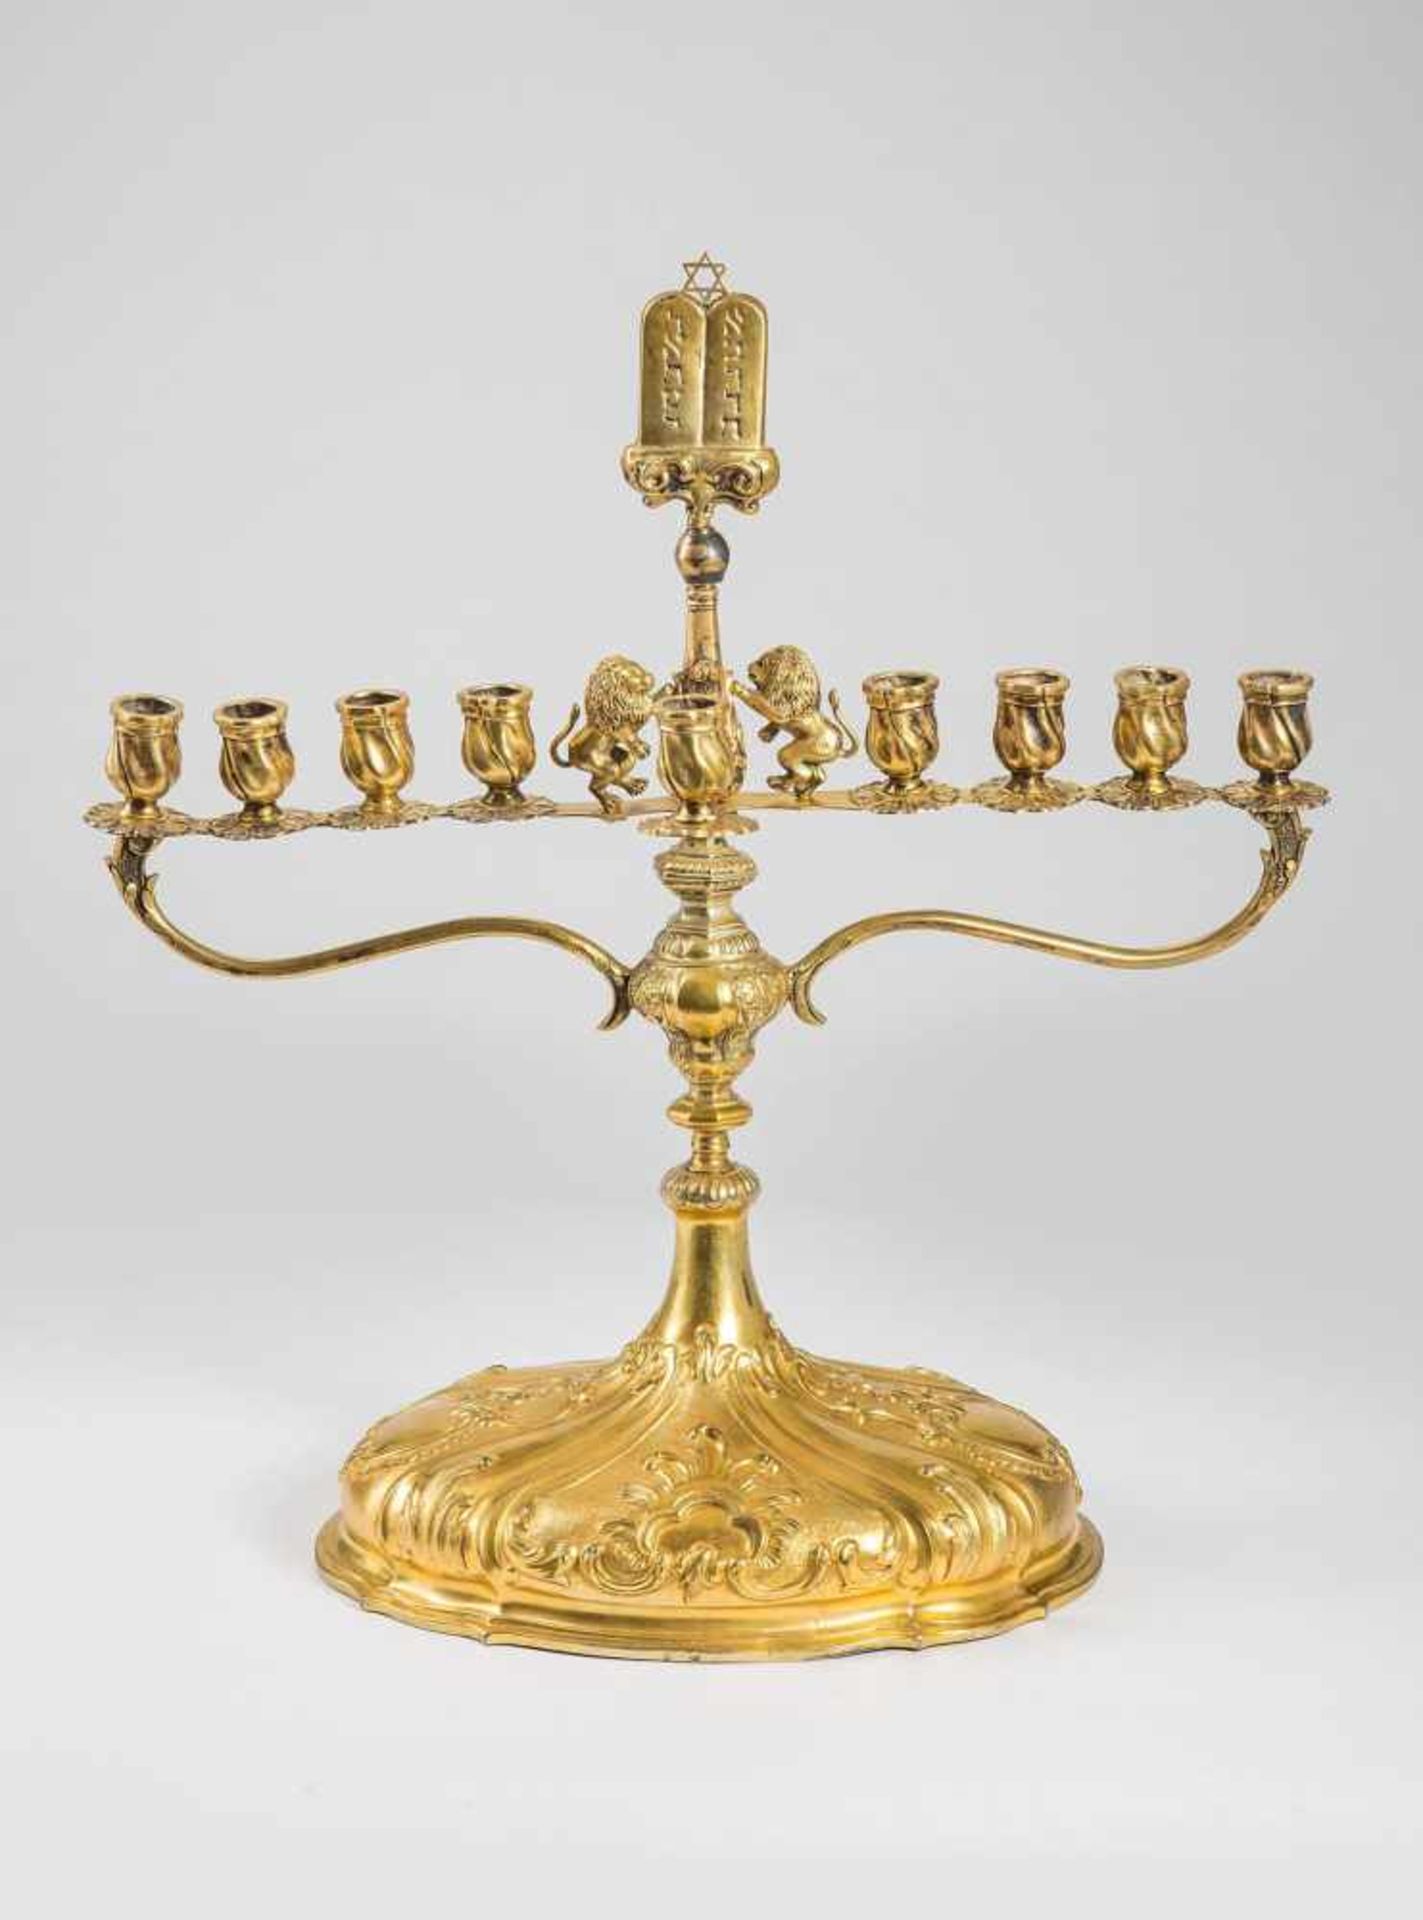 Chanukka-Leuchterin barocker Form. Metall vergoldet, auf ovalem barocken Unterteil der Aufsatz für 9